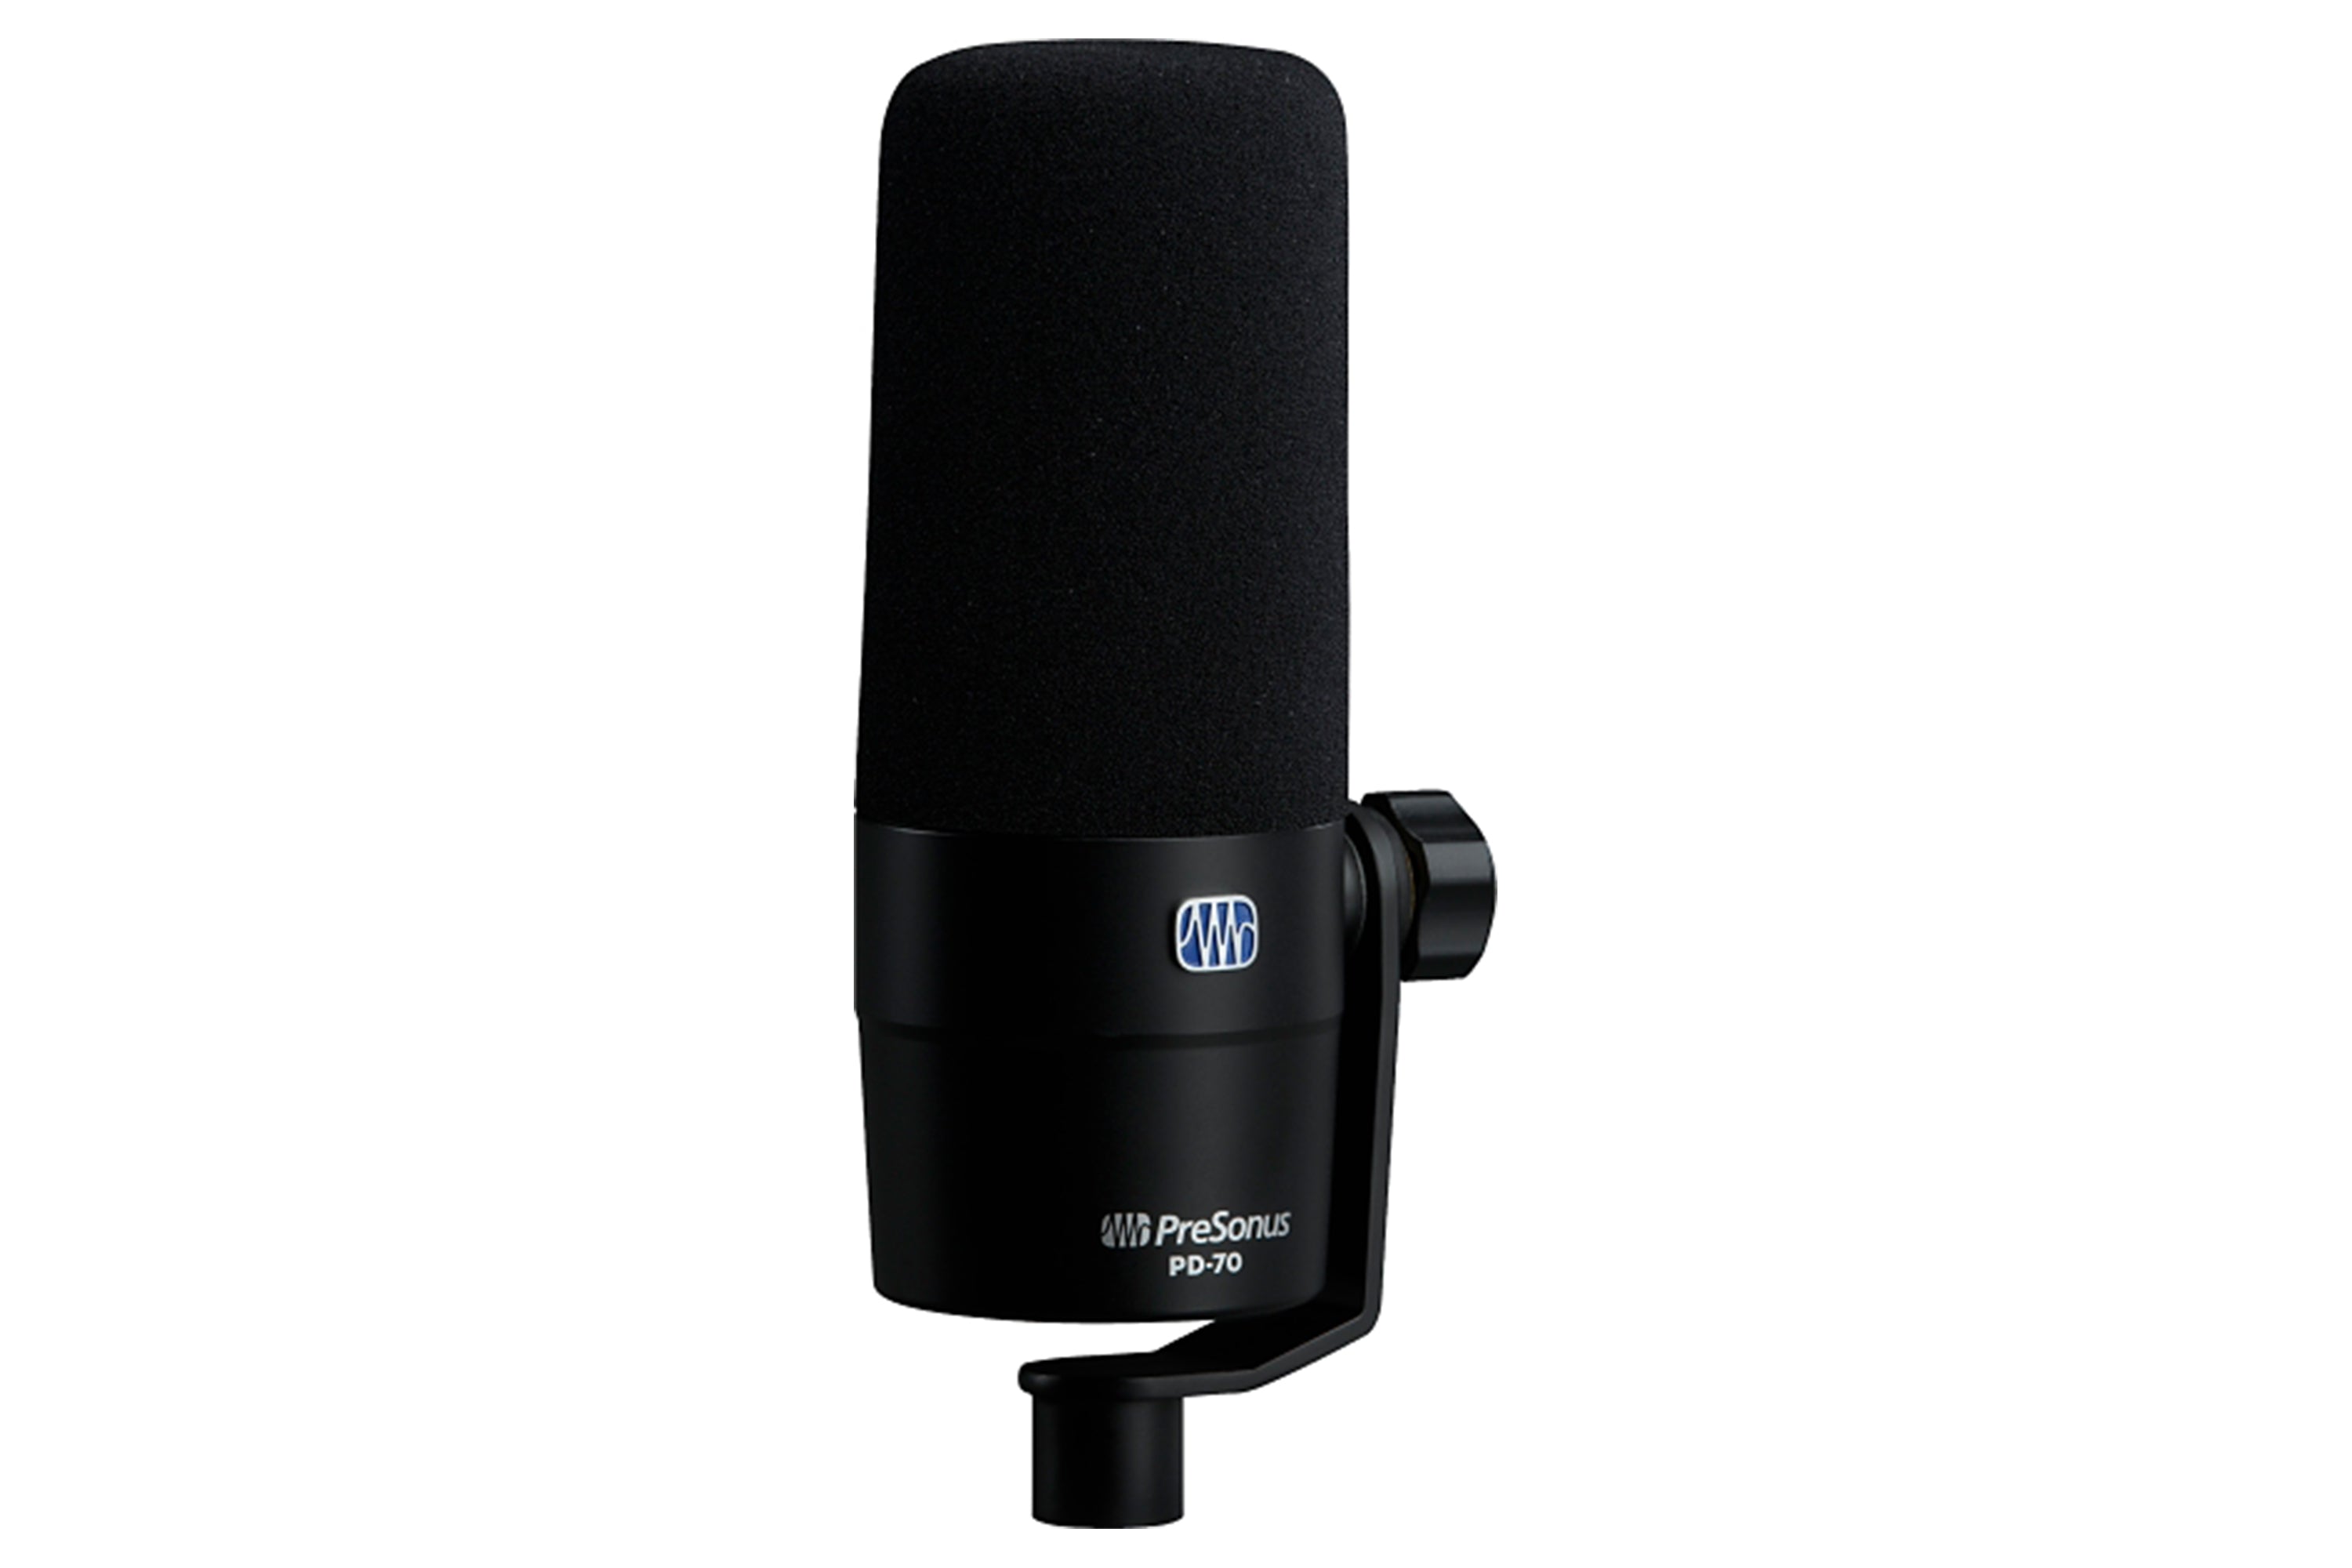 PreSonus PD-70 Broadcast Microphone